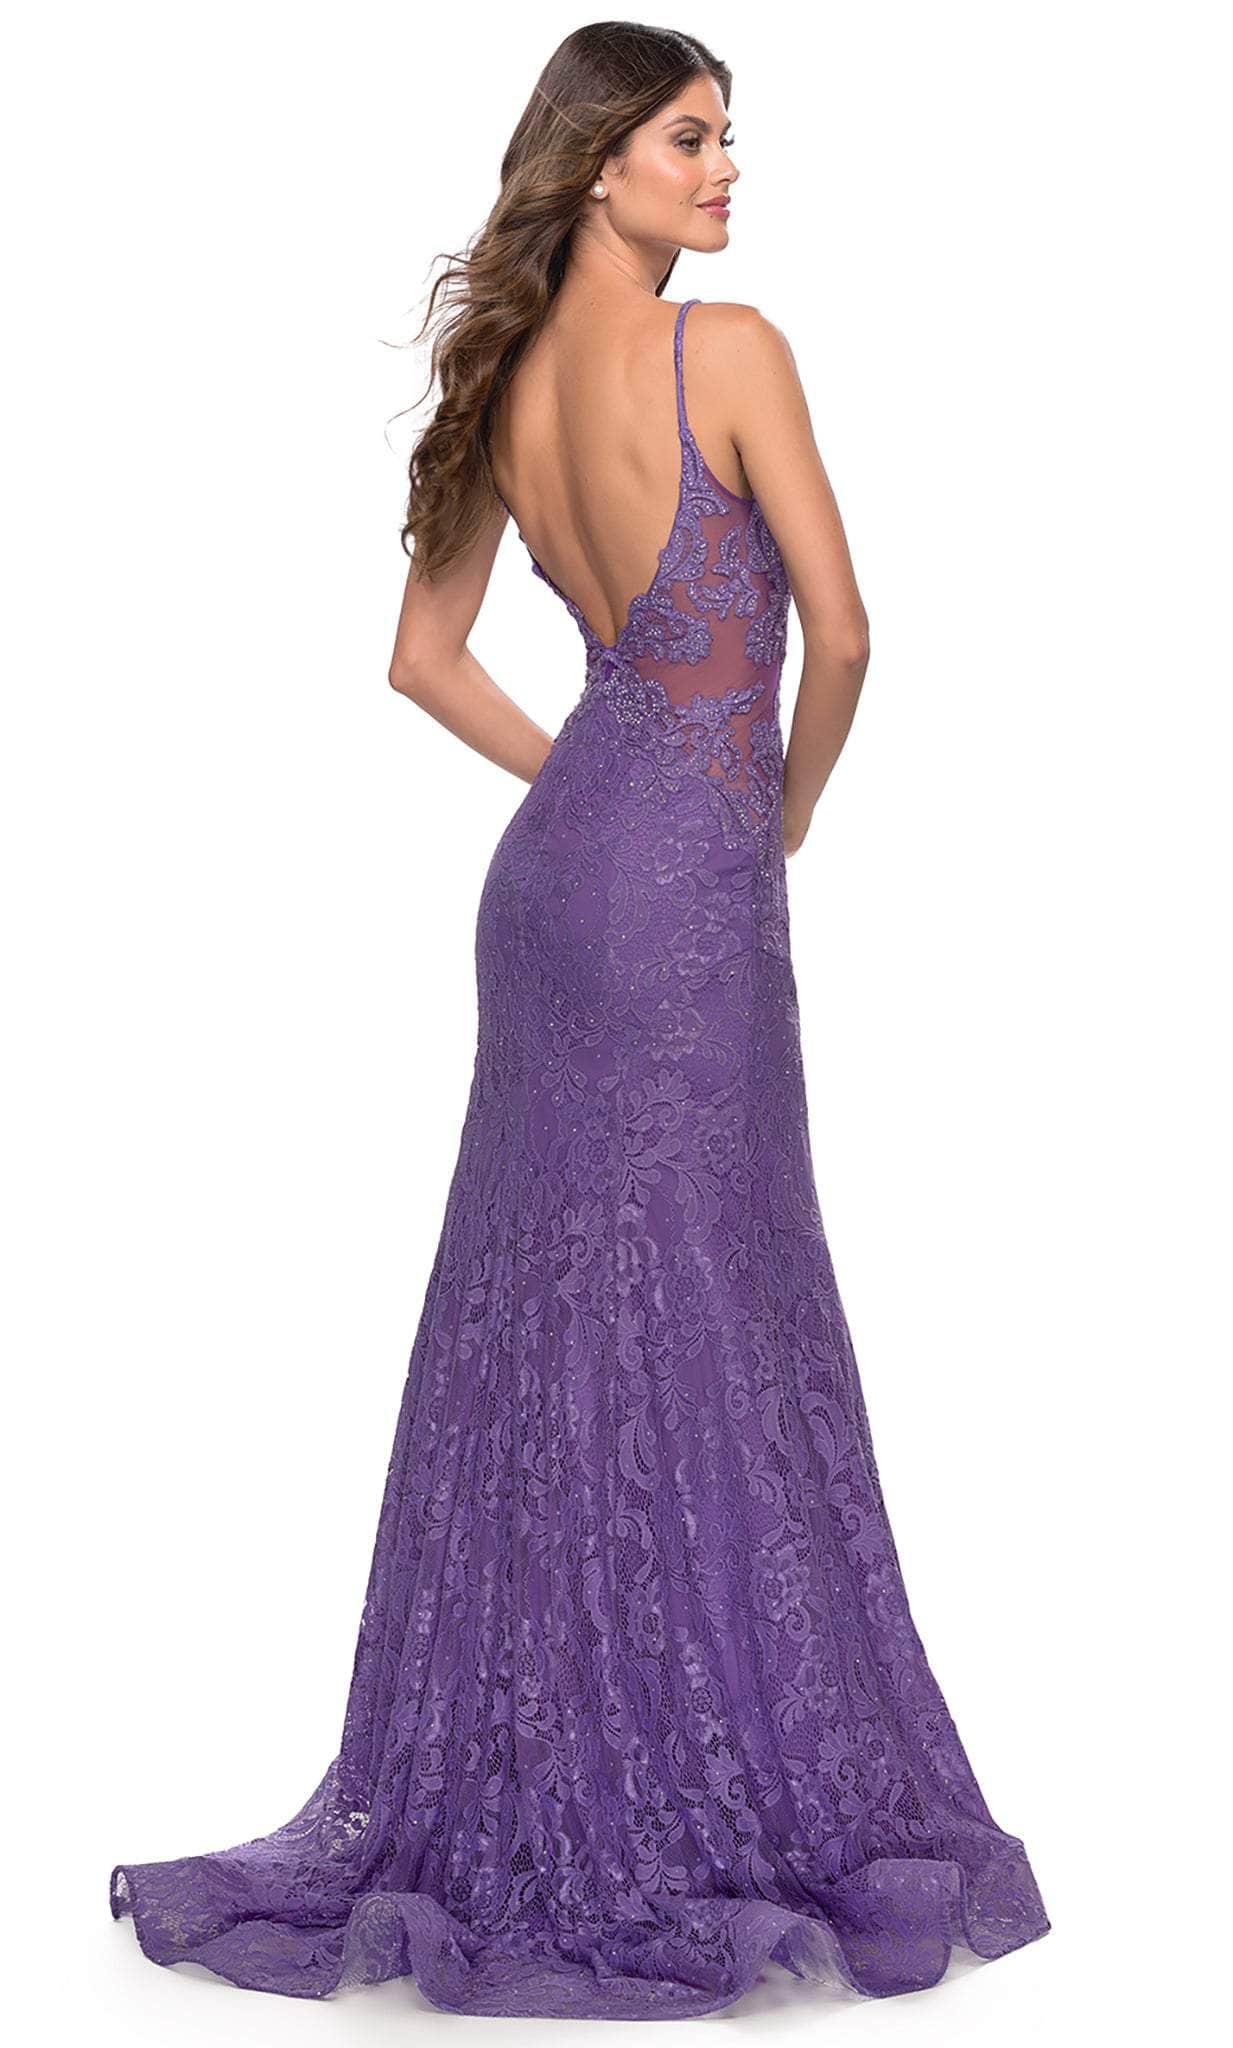 La Femme 31512 - Lace Dress